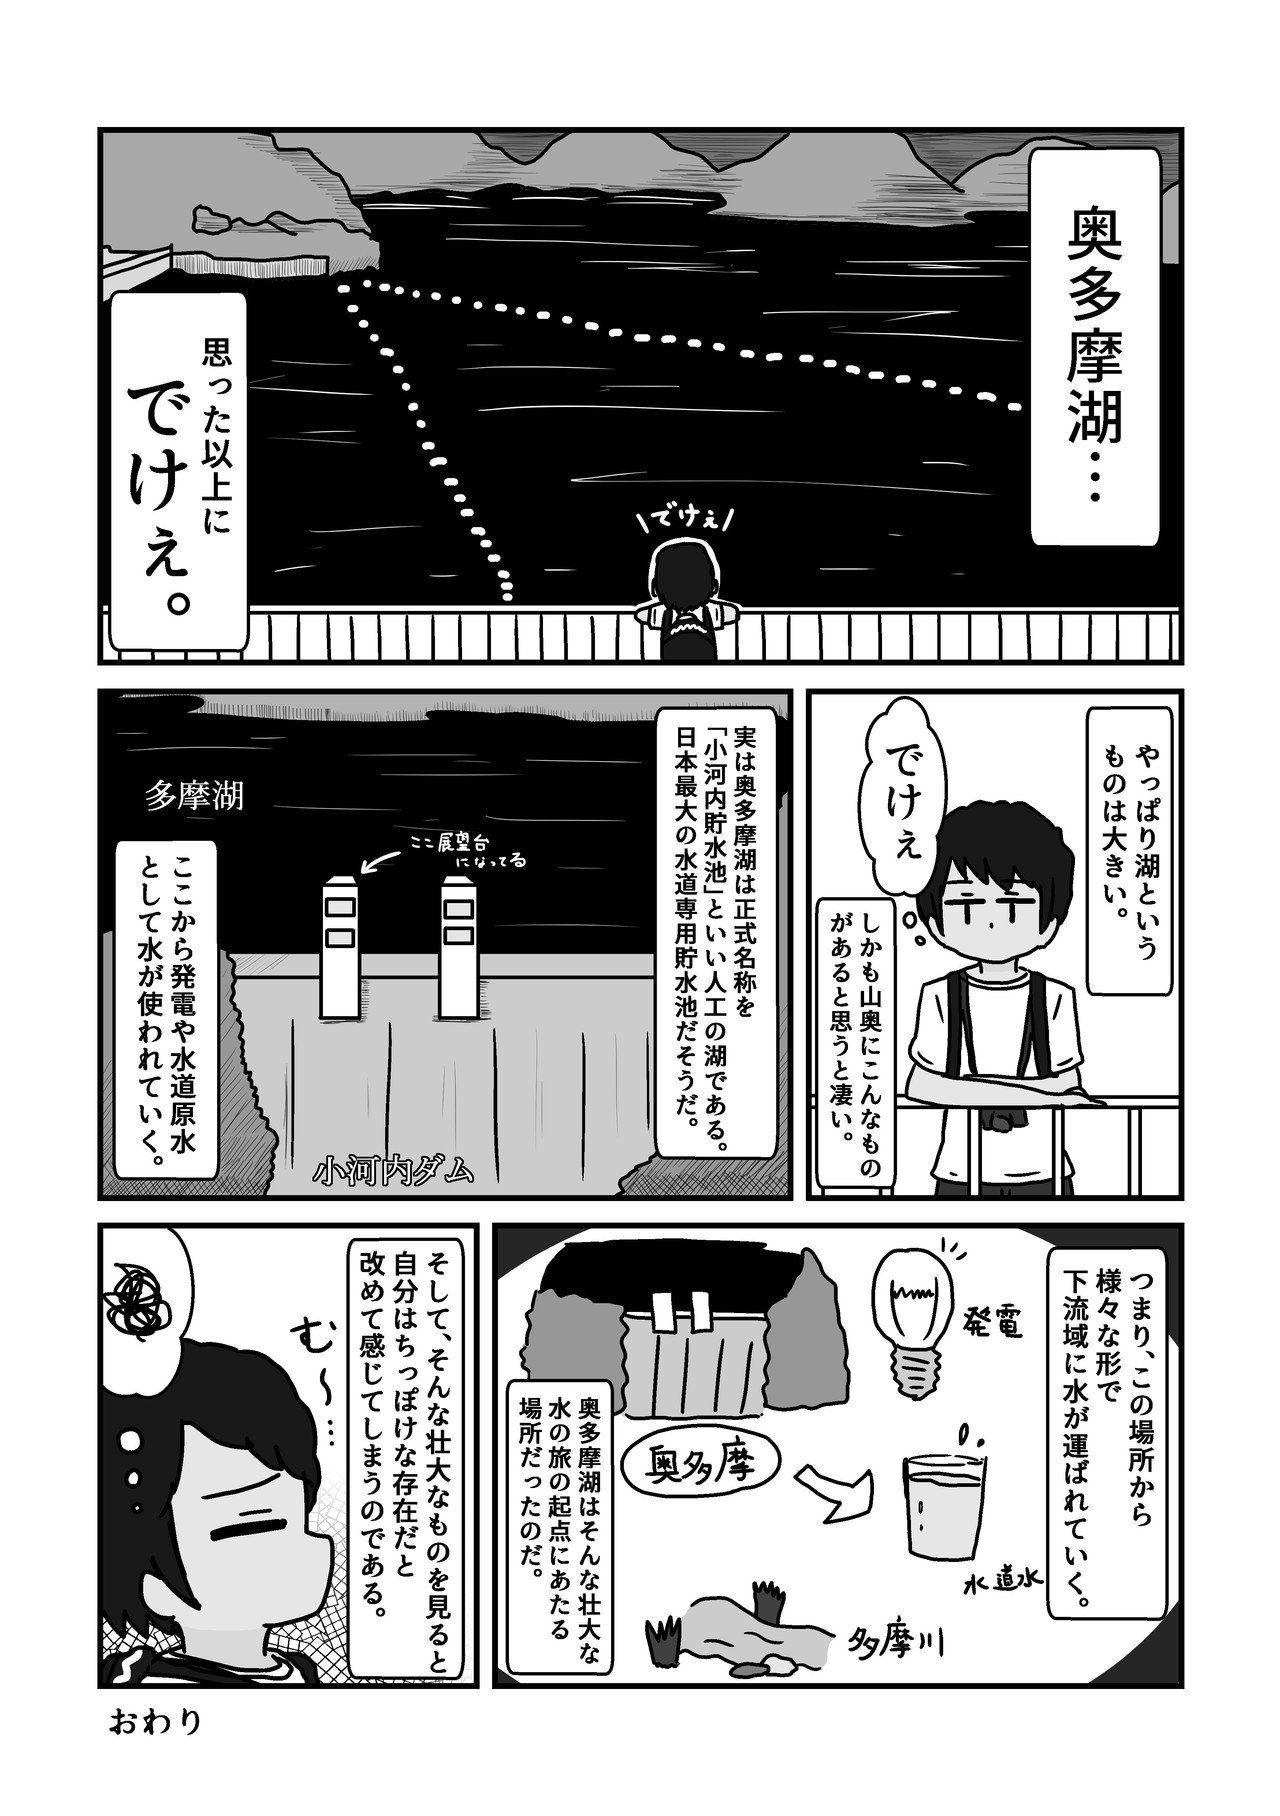 2018.6.26_旅漫画２